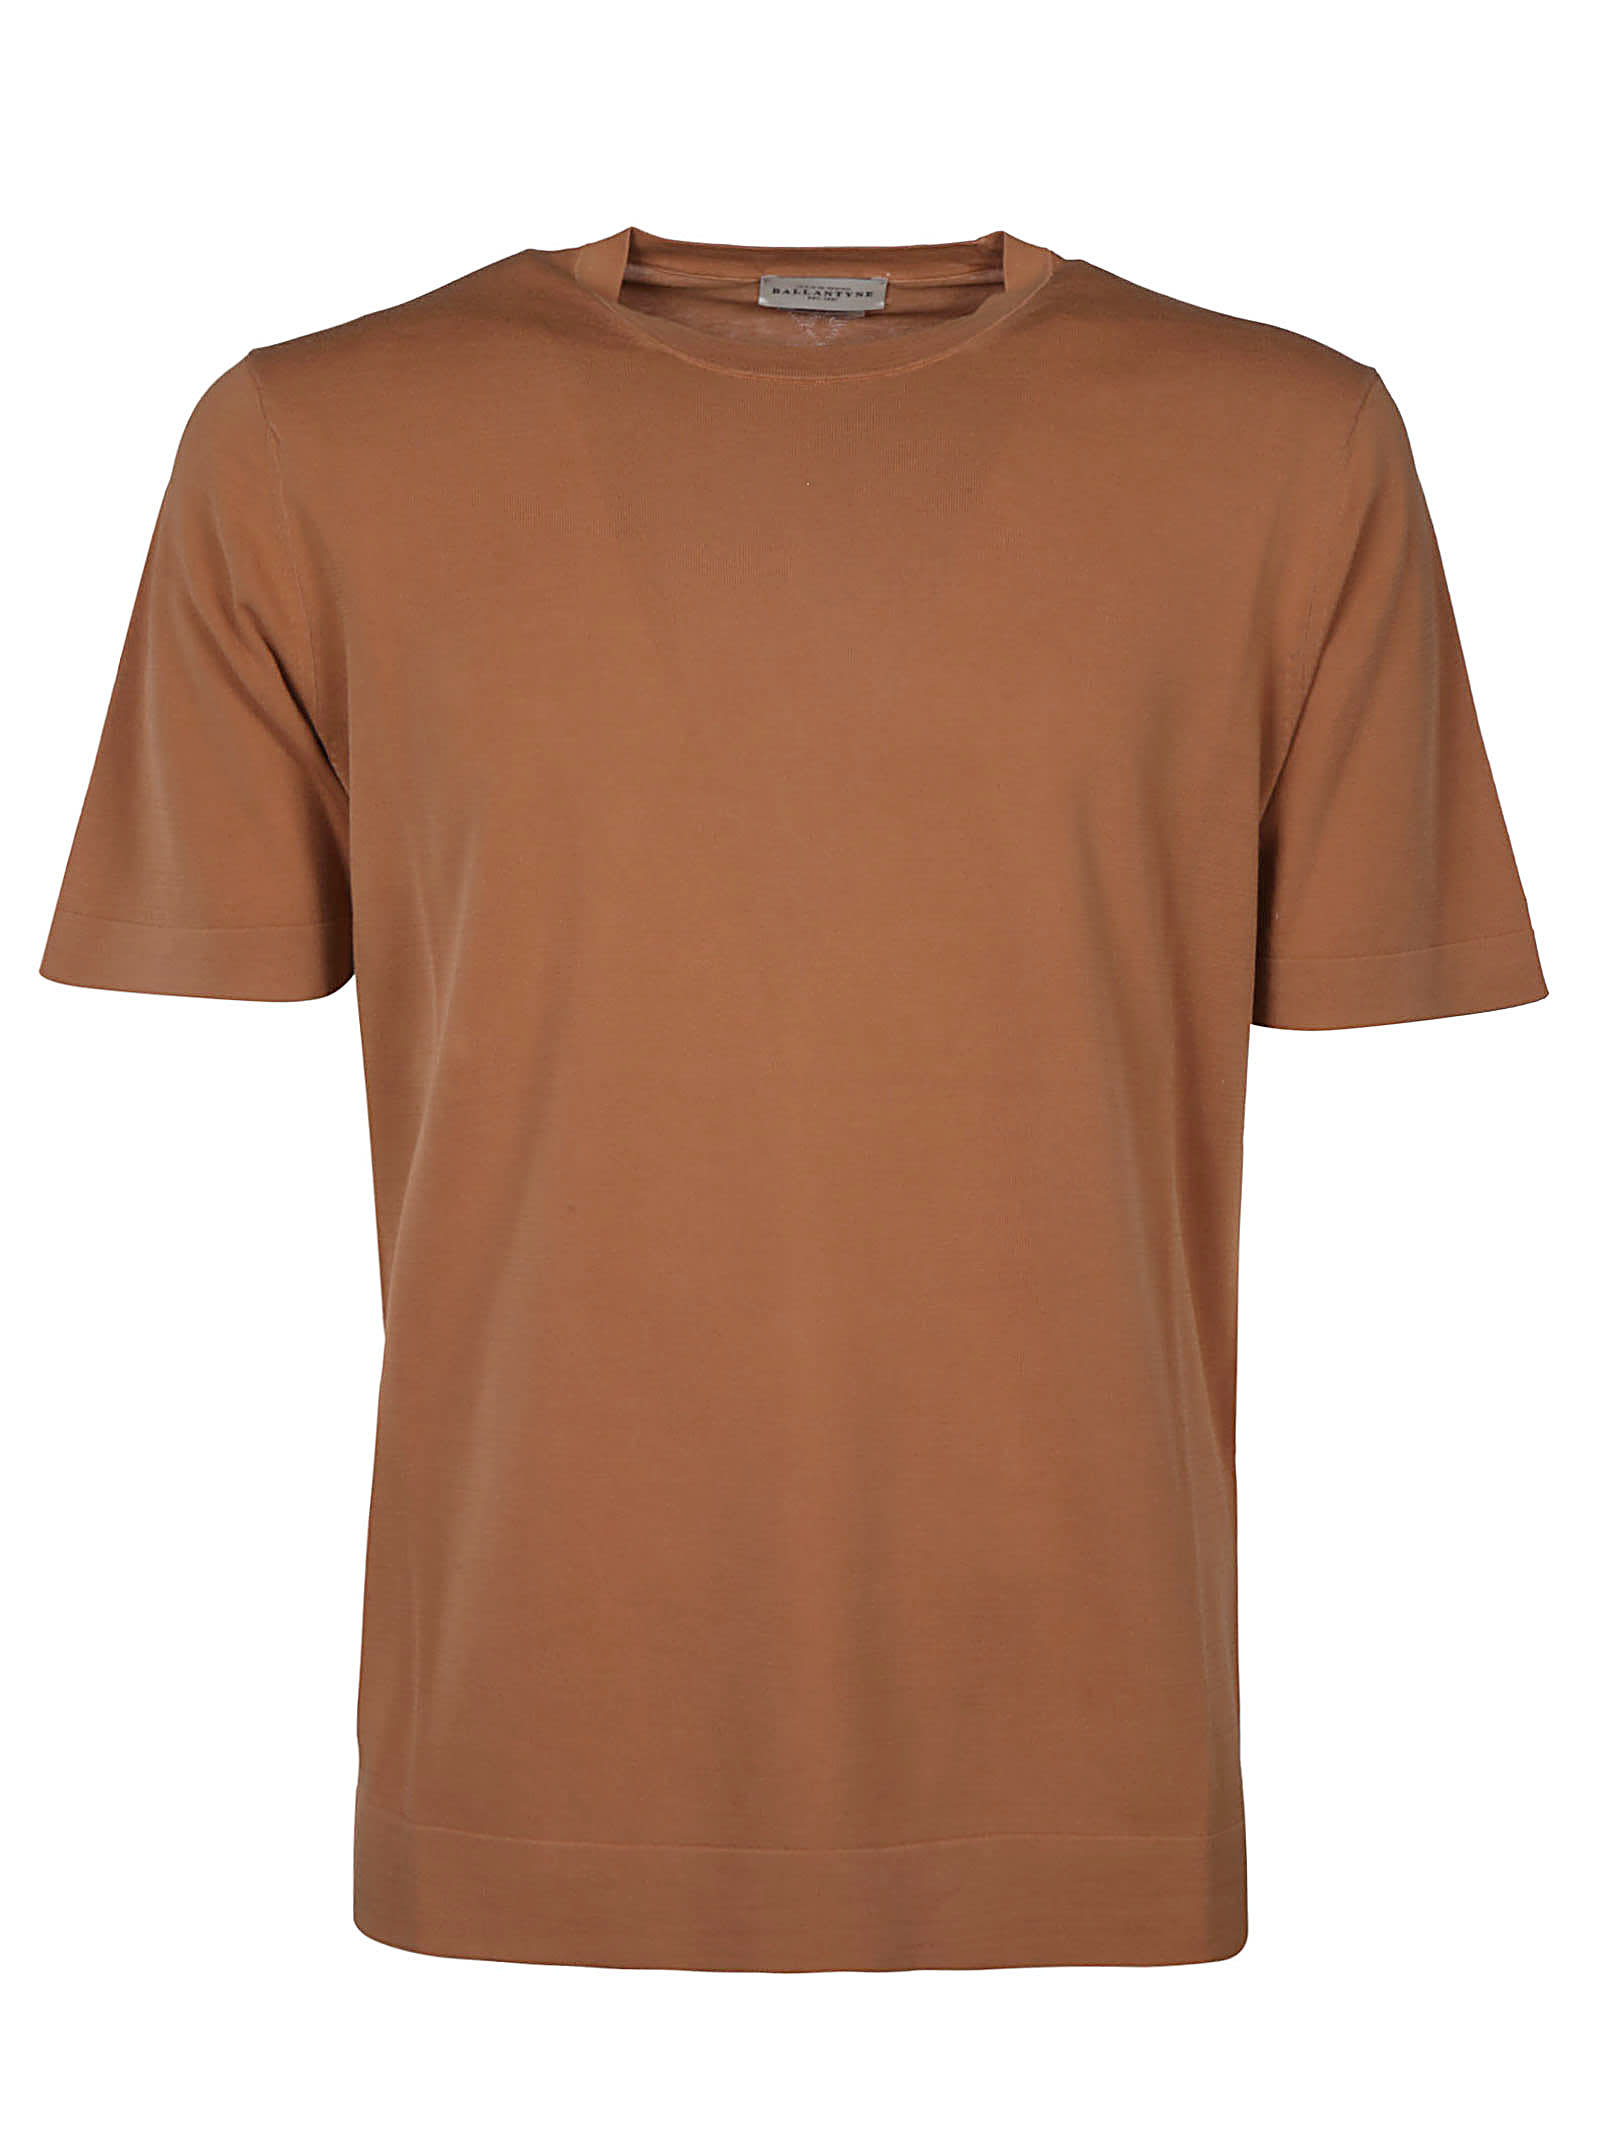 Ballantyne T-shirt Garment-dye